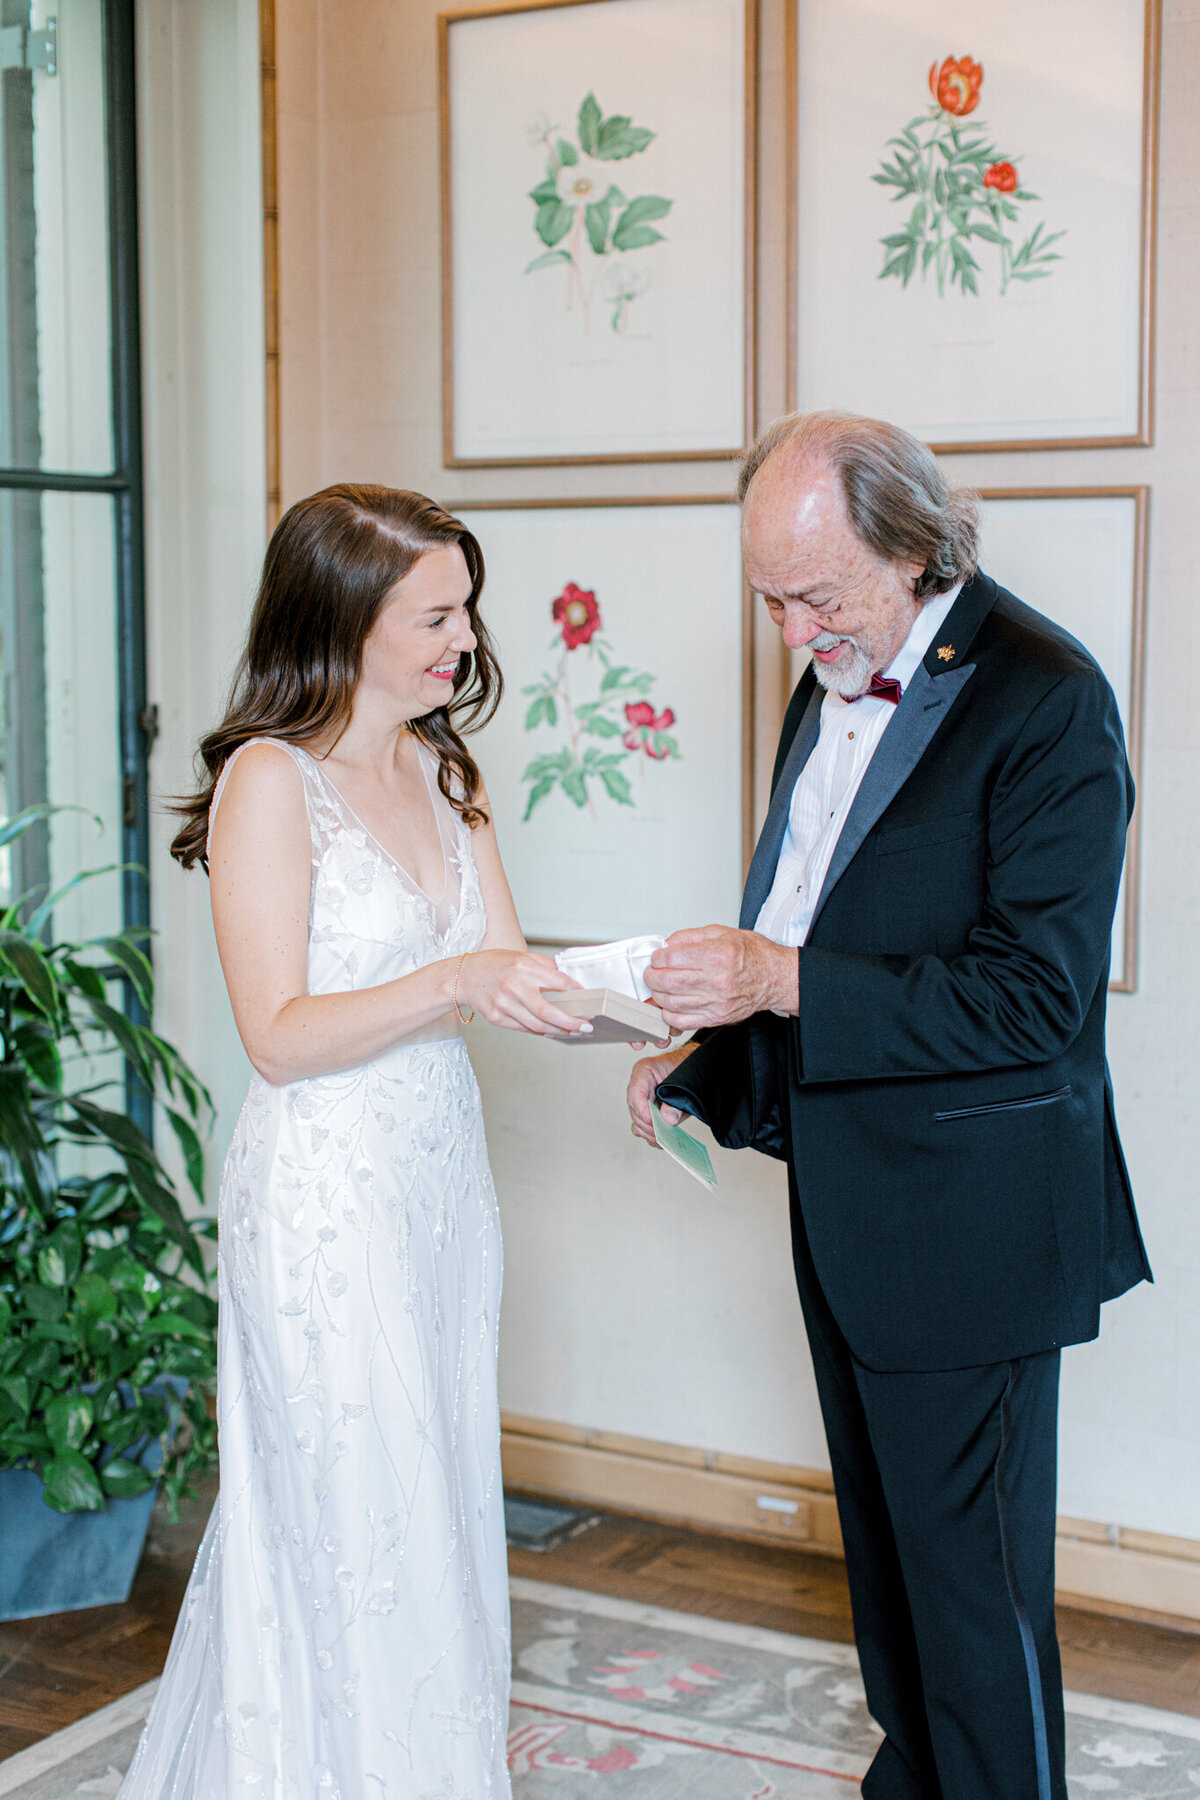 Gena & Matt's Wedding at the Dallas Arboretum | Dallas Wedding Photographer | Sami Kathryn Photography-60